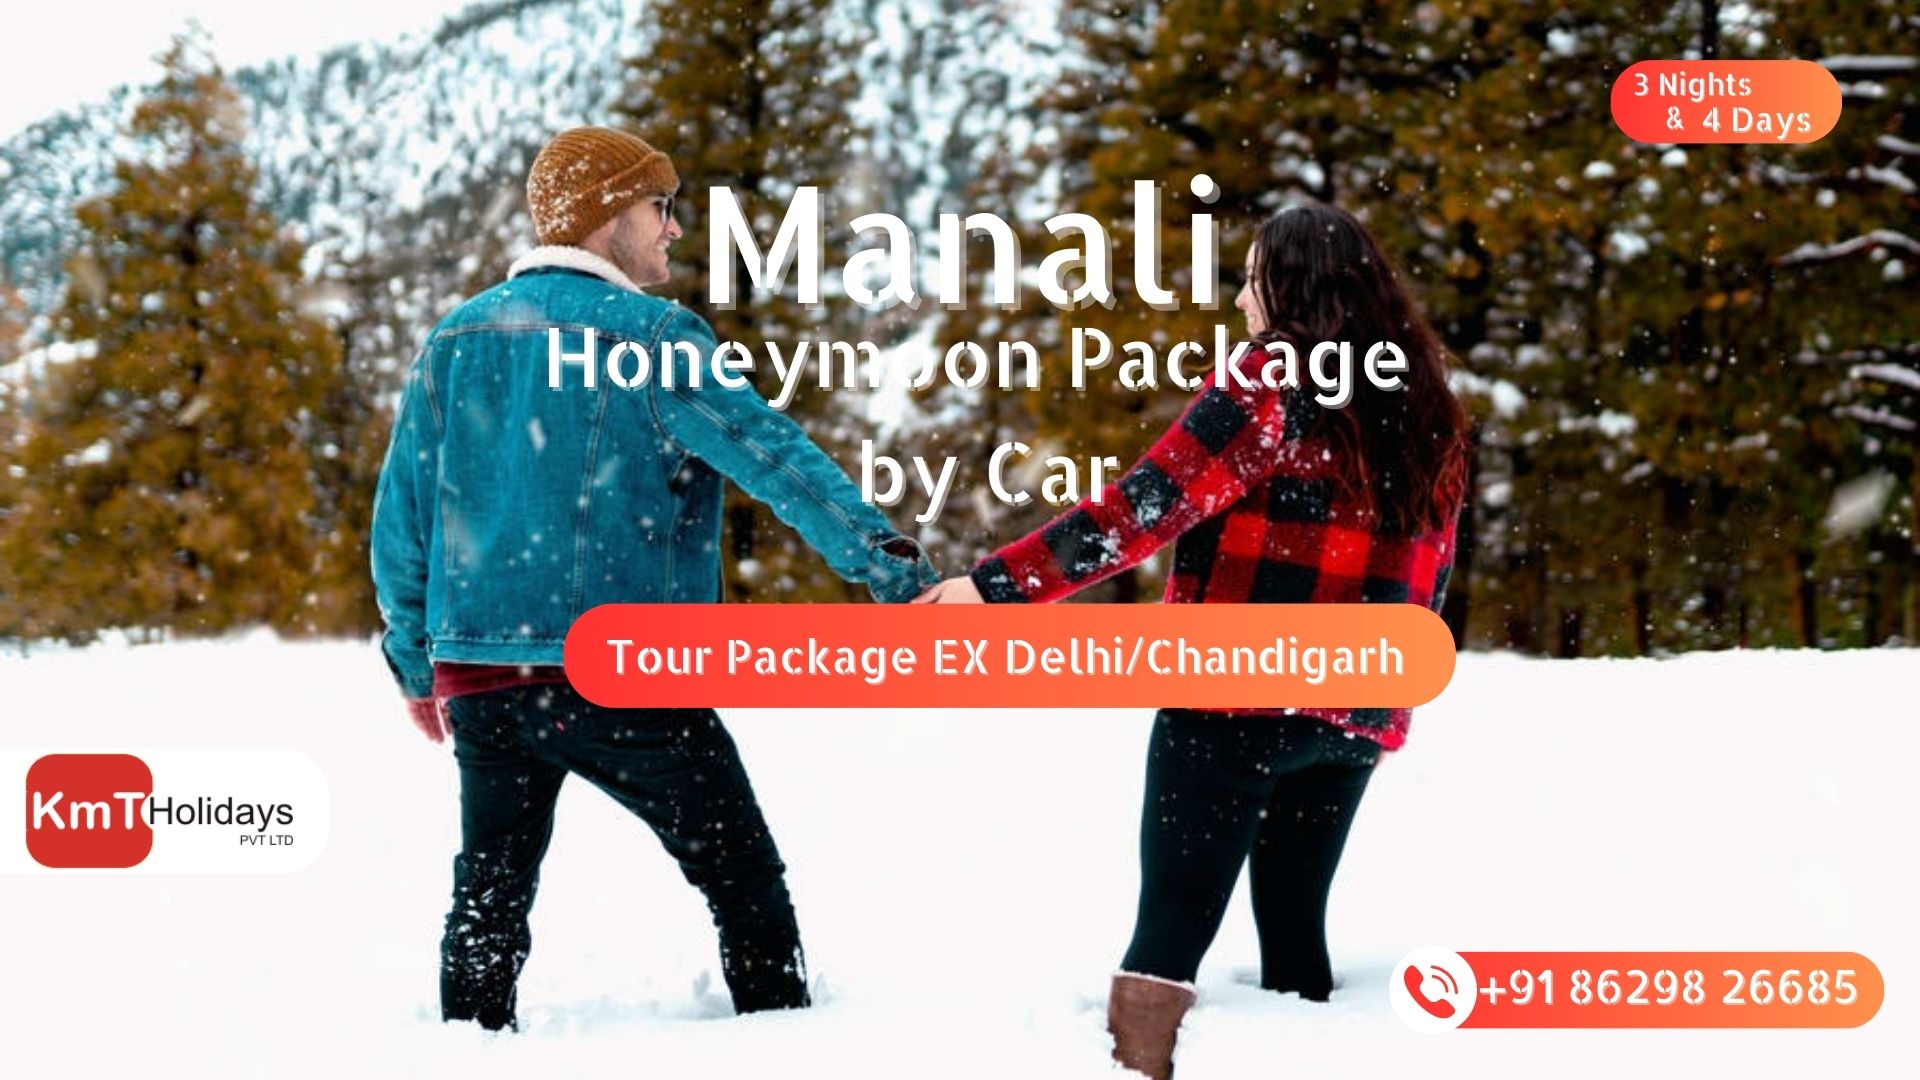 manali honeymoon package by car